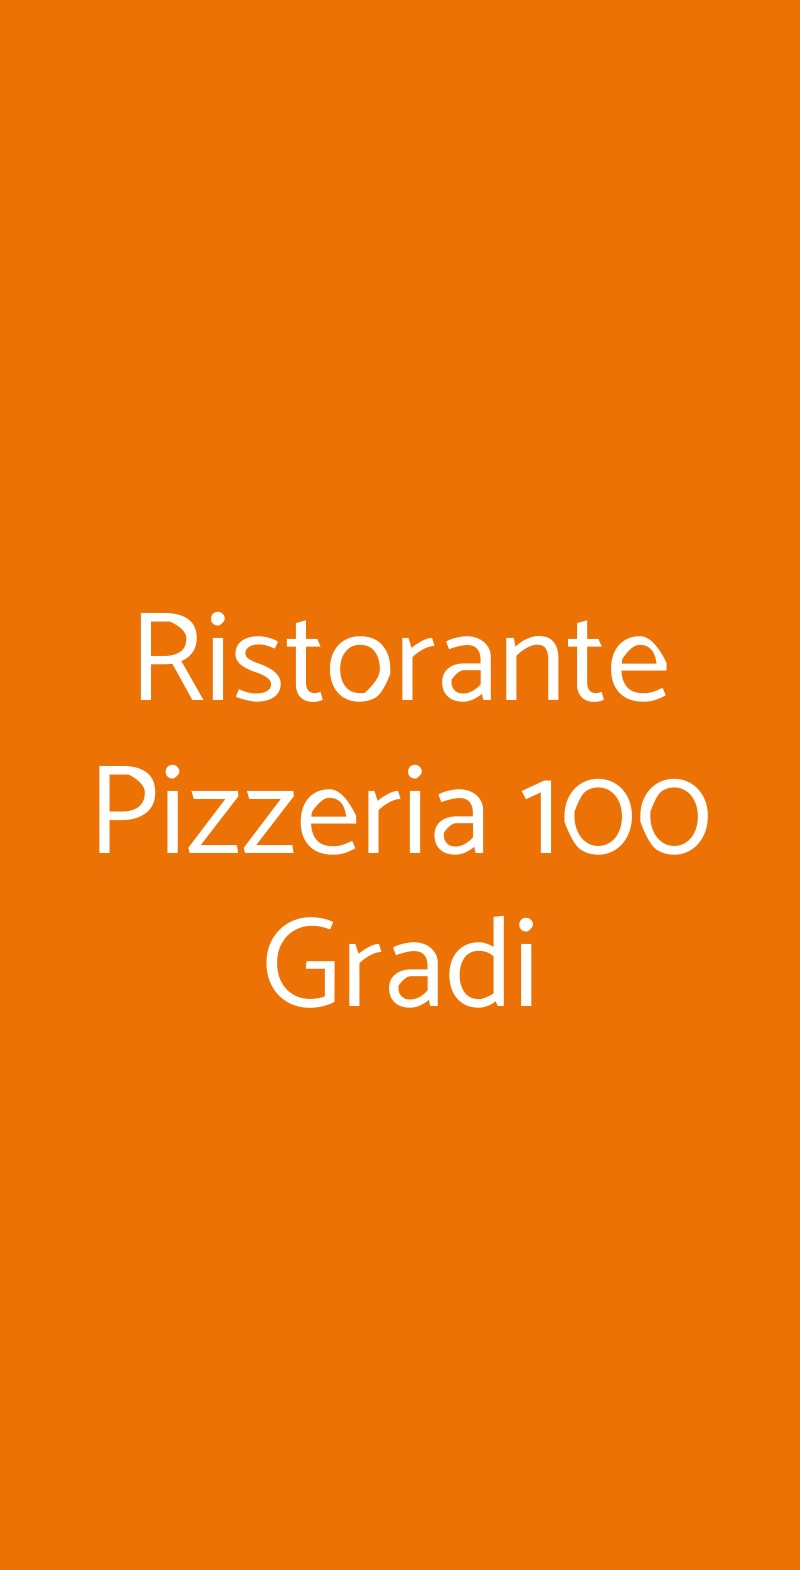 Ristorante Pizzeria 100 Gradi Carinaro menù 1 pagina